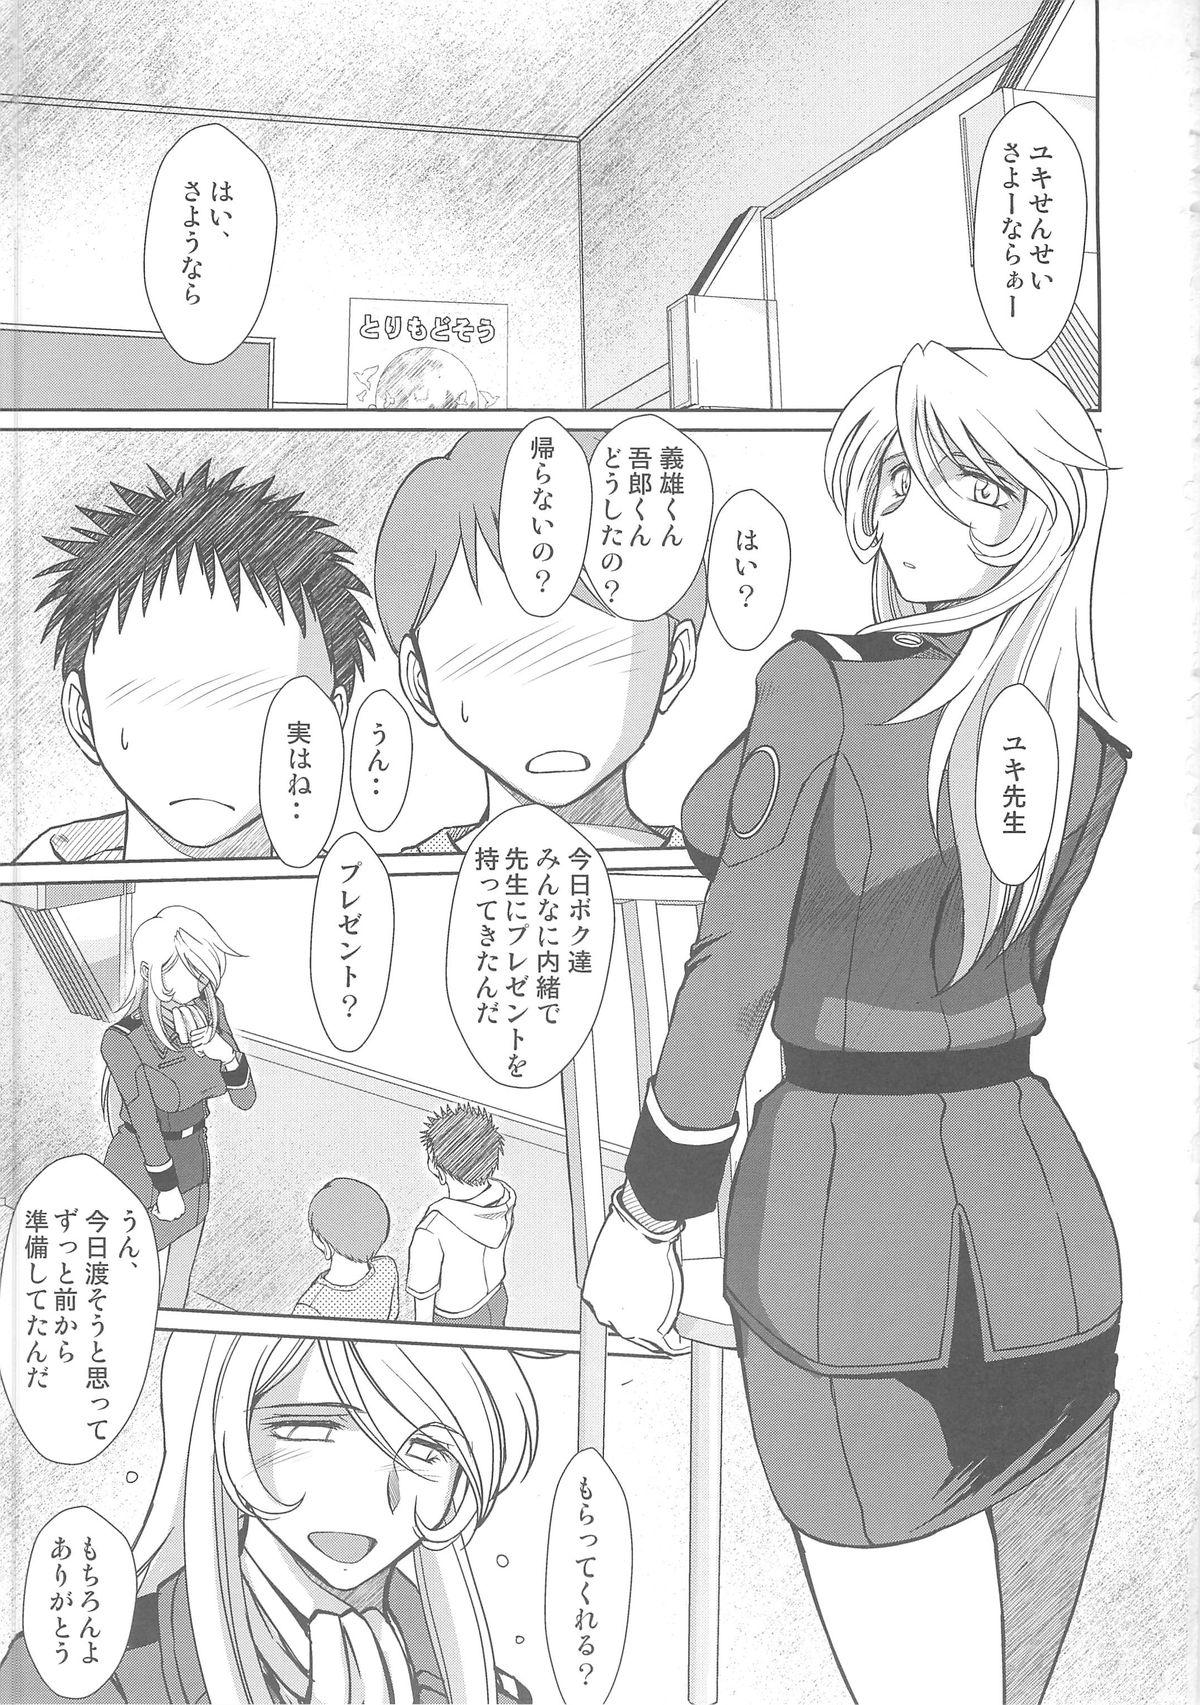 Ball Busting 2199-nen no Mori Yuki - Space battleship yamato Pick Up - Page 2